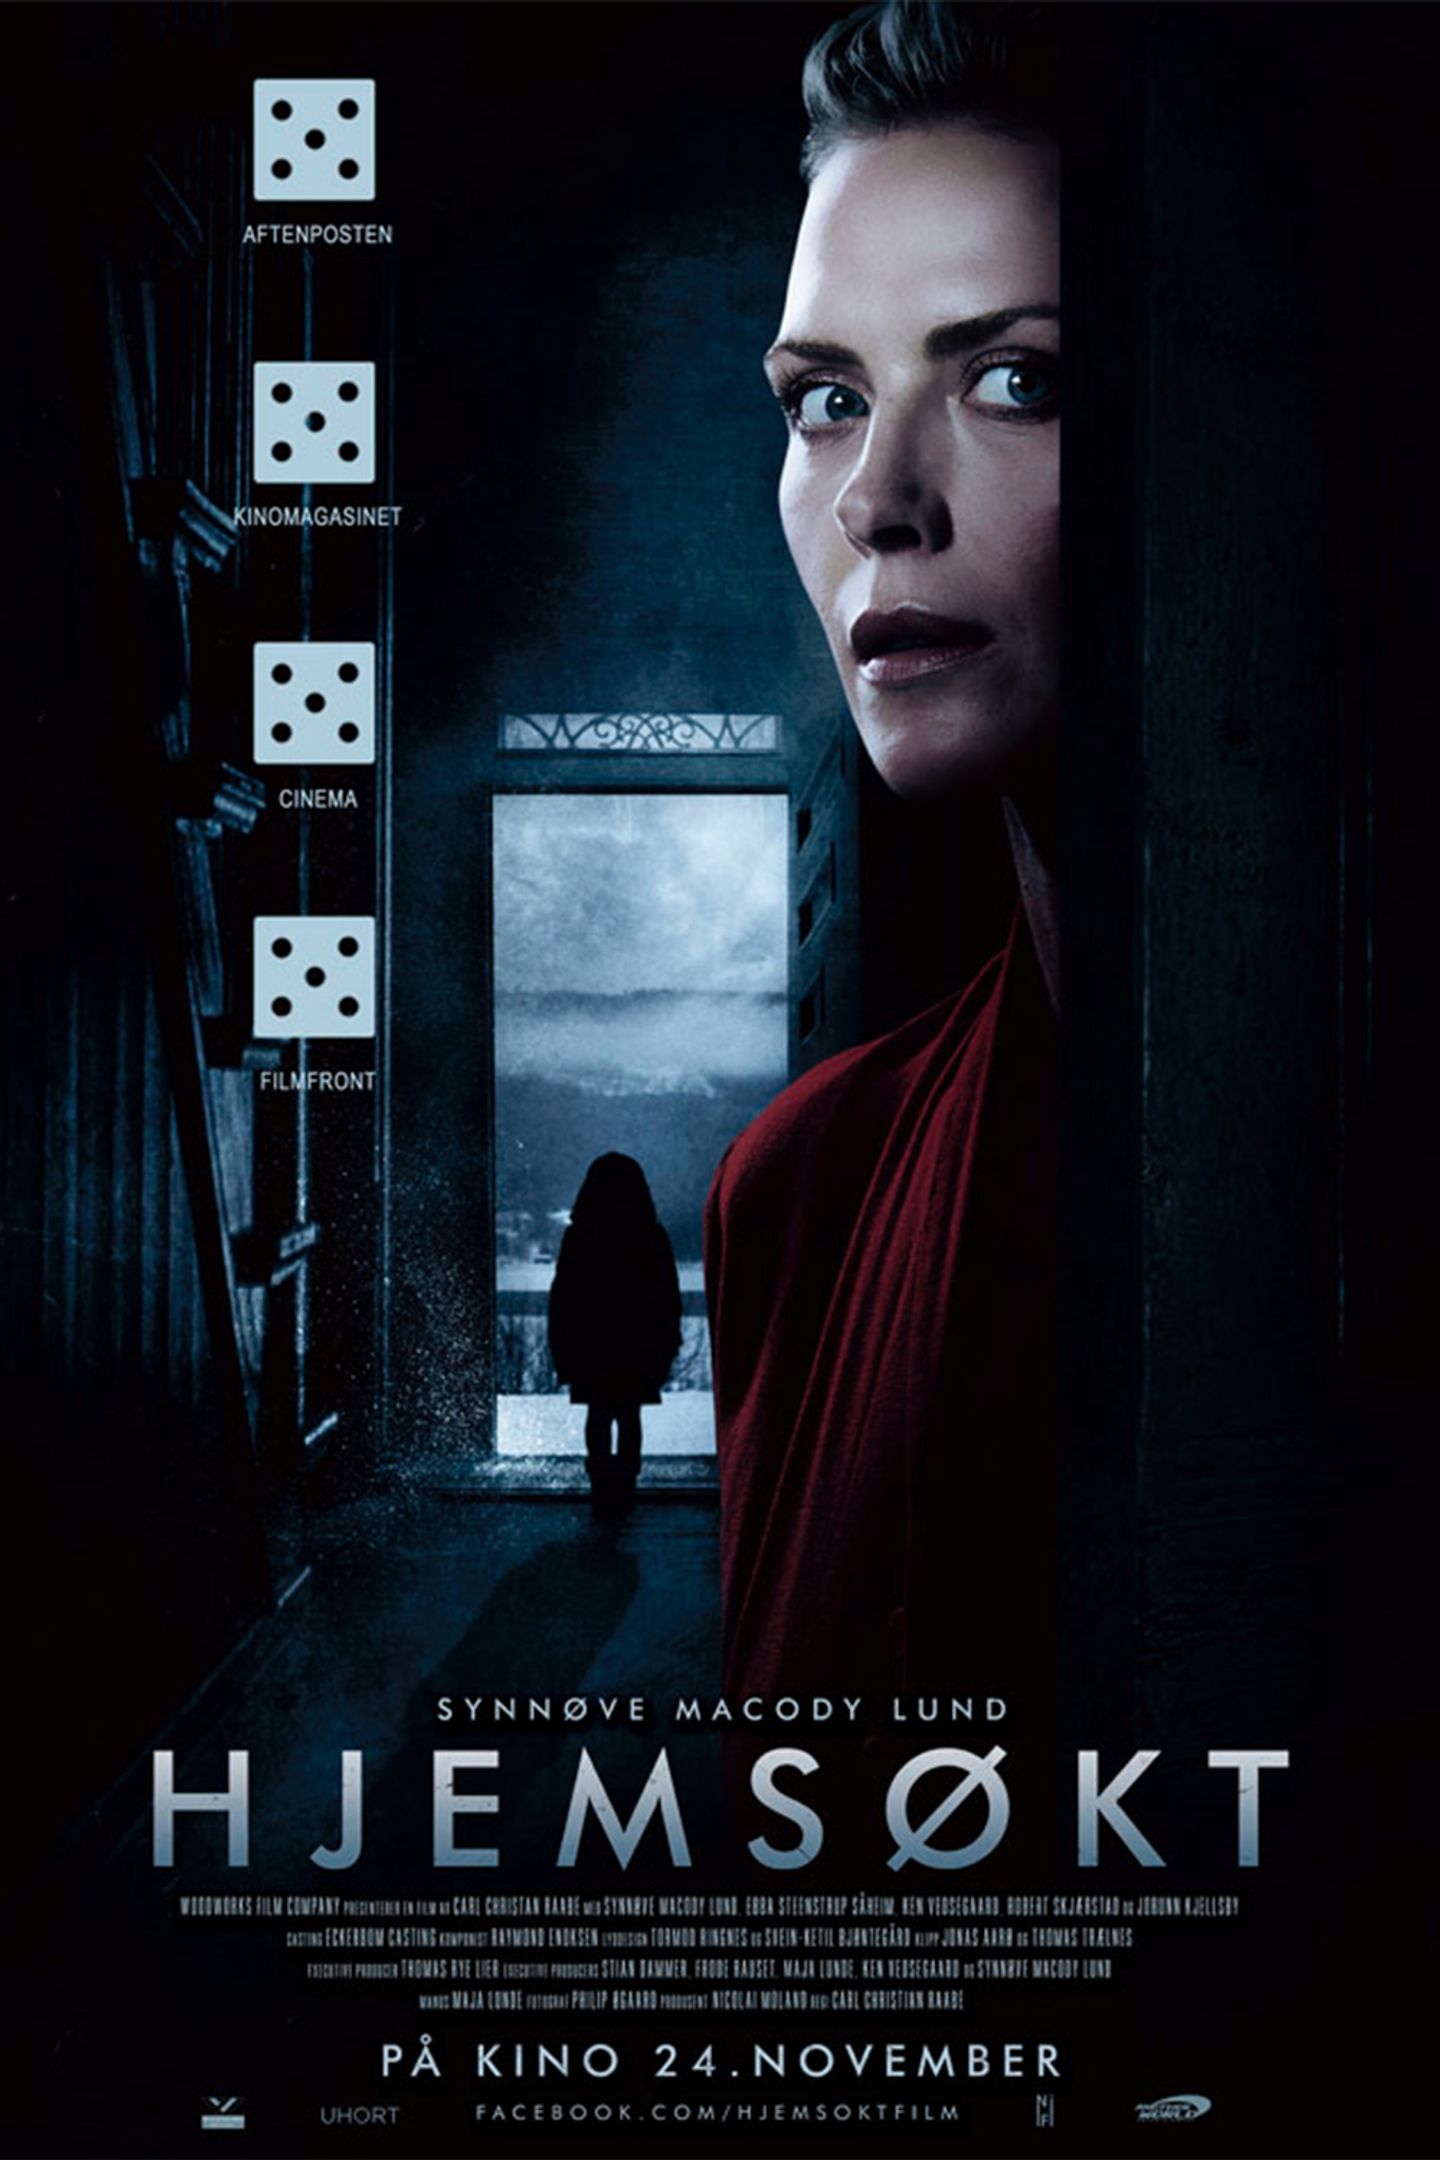 Plakat for 'Hjemsøkt'